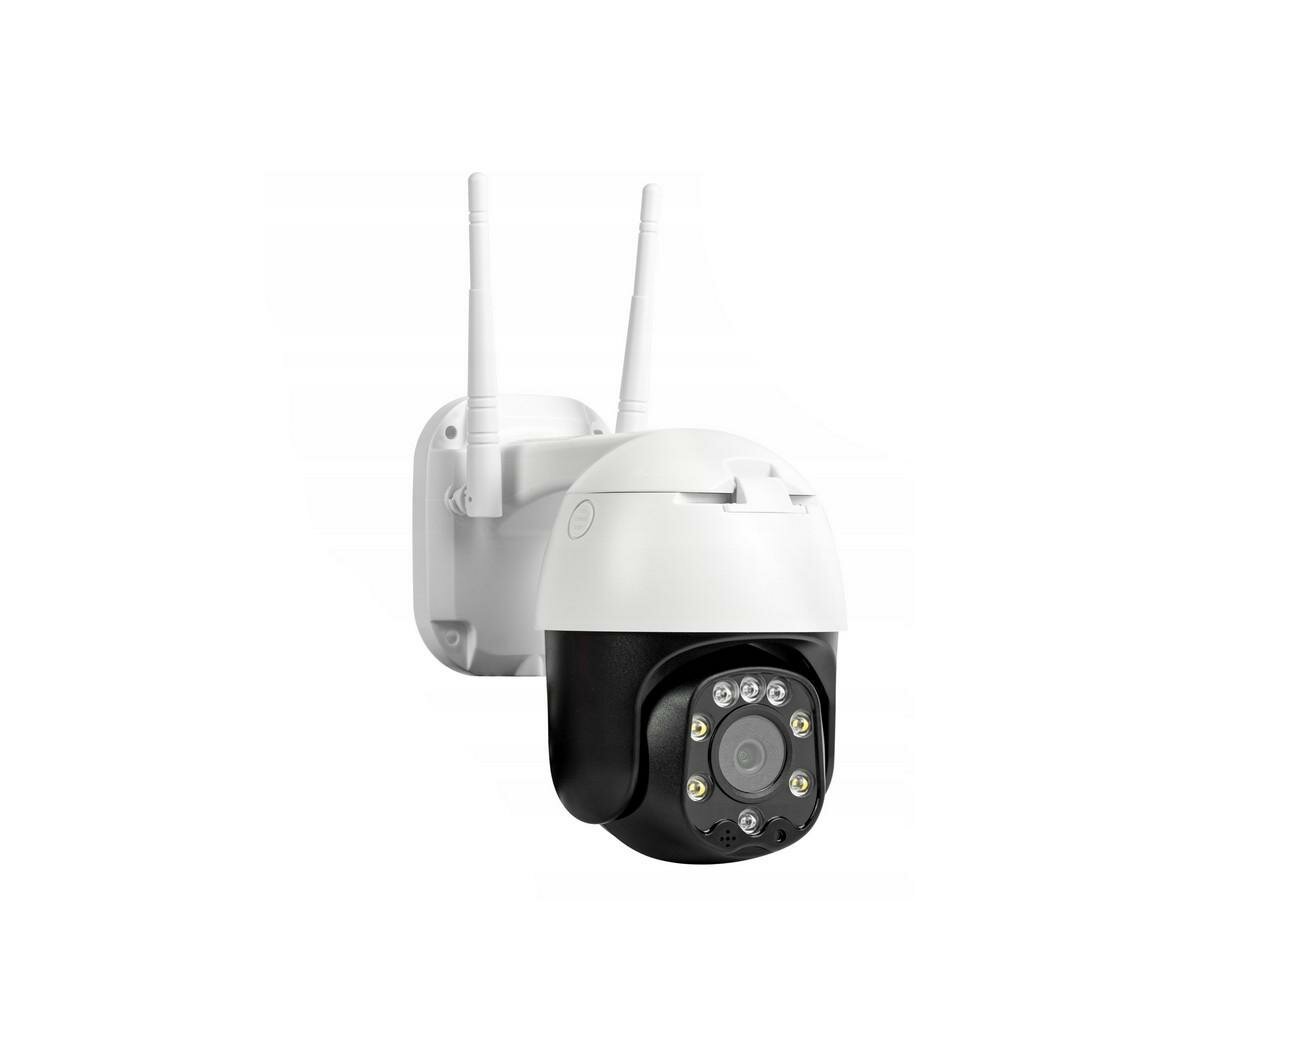 Уличная 5Мп поворотная Wi-Fi IP-камера Link SD28W-8G (H2334RU) - камера видеонаблюдения уличная. Разрешение 5 Мп - 2560x1920!